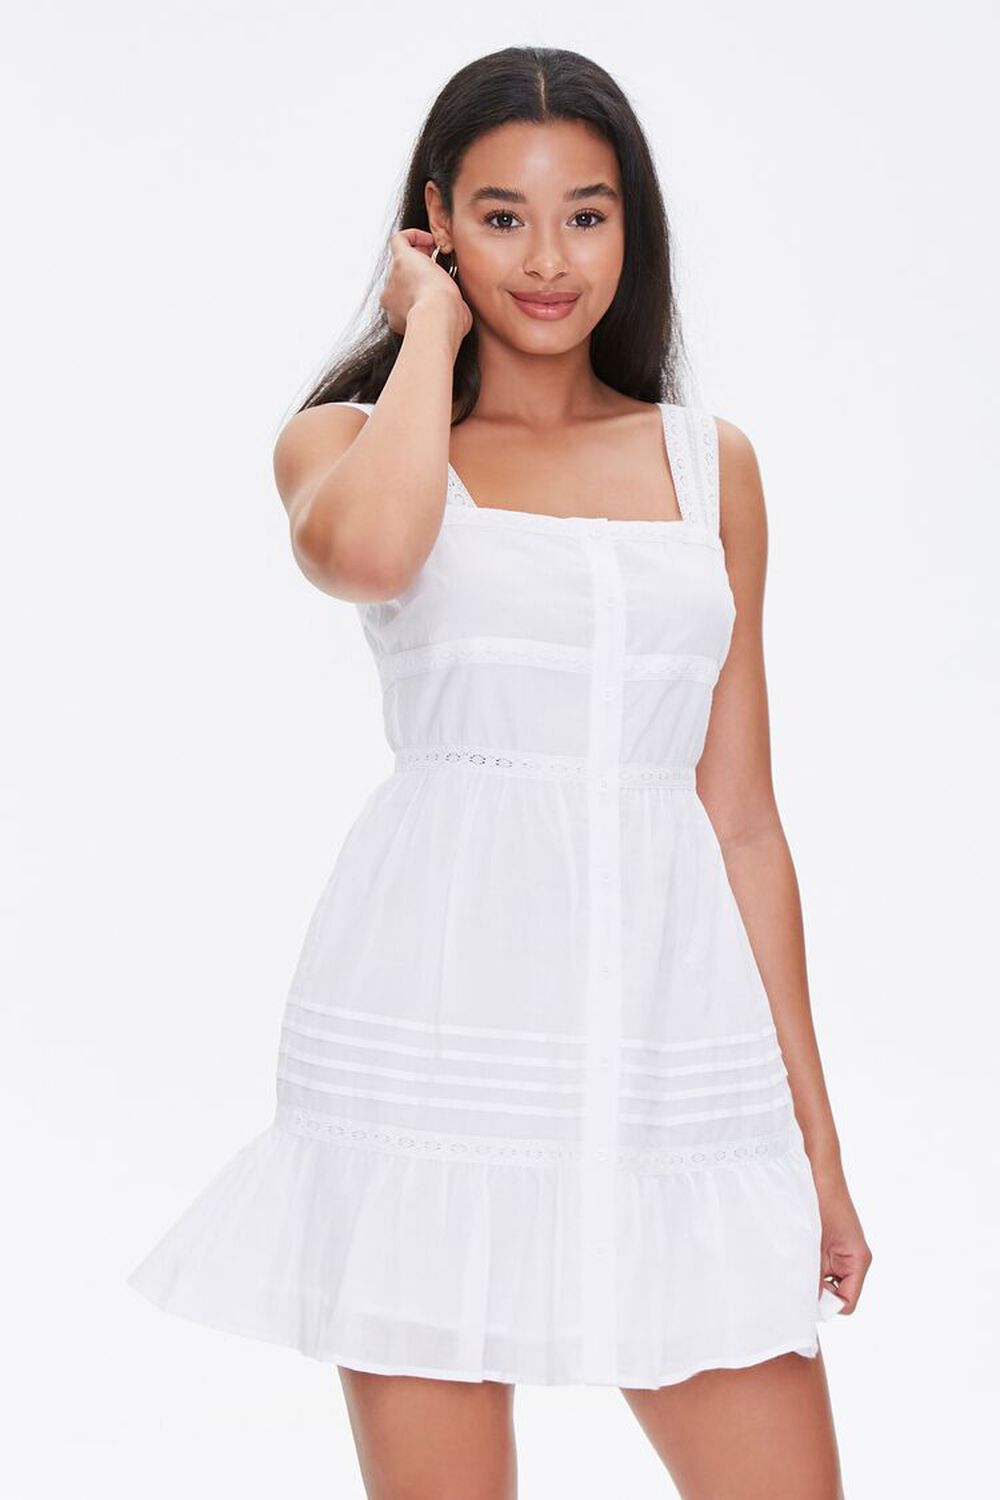 WHITE Fit & Flare Mini Dress, image 1